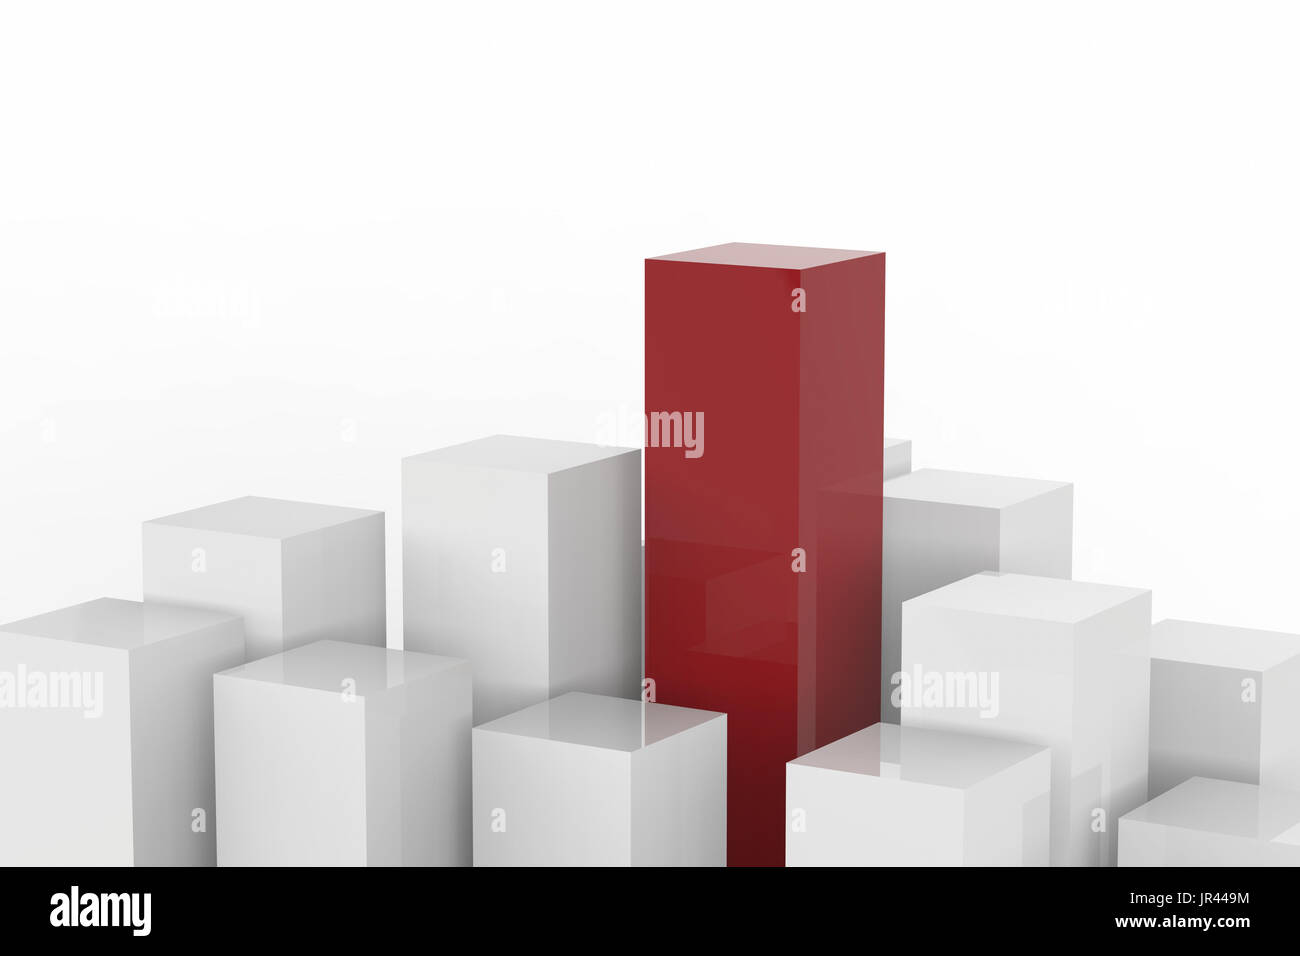 Concept de leadership avec rendu 3d'immeubles rouges et blancs sur fond blanc Banque D'Images